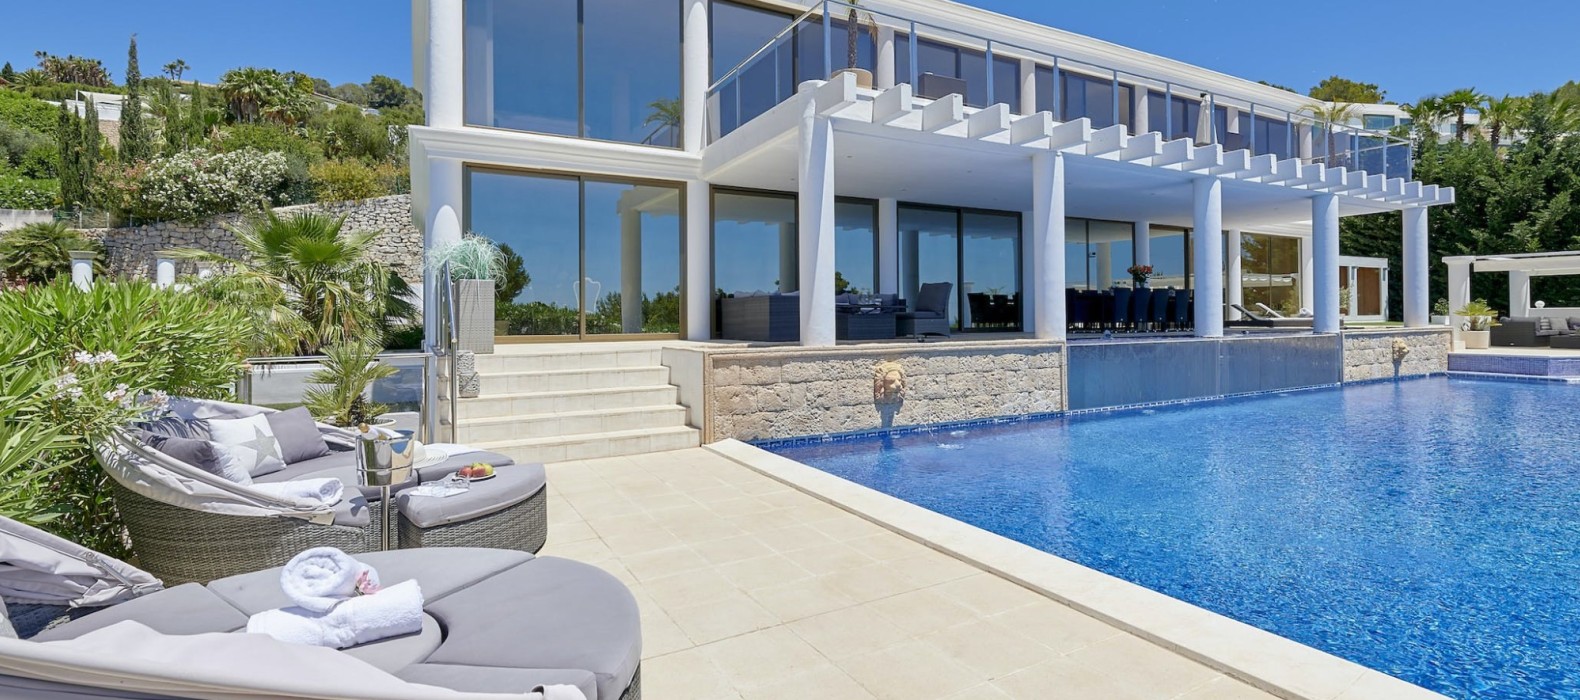 Exterior villa with pool view of Villa Riva Alto in Ibiza